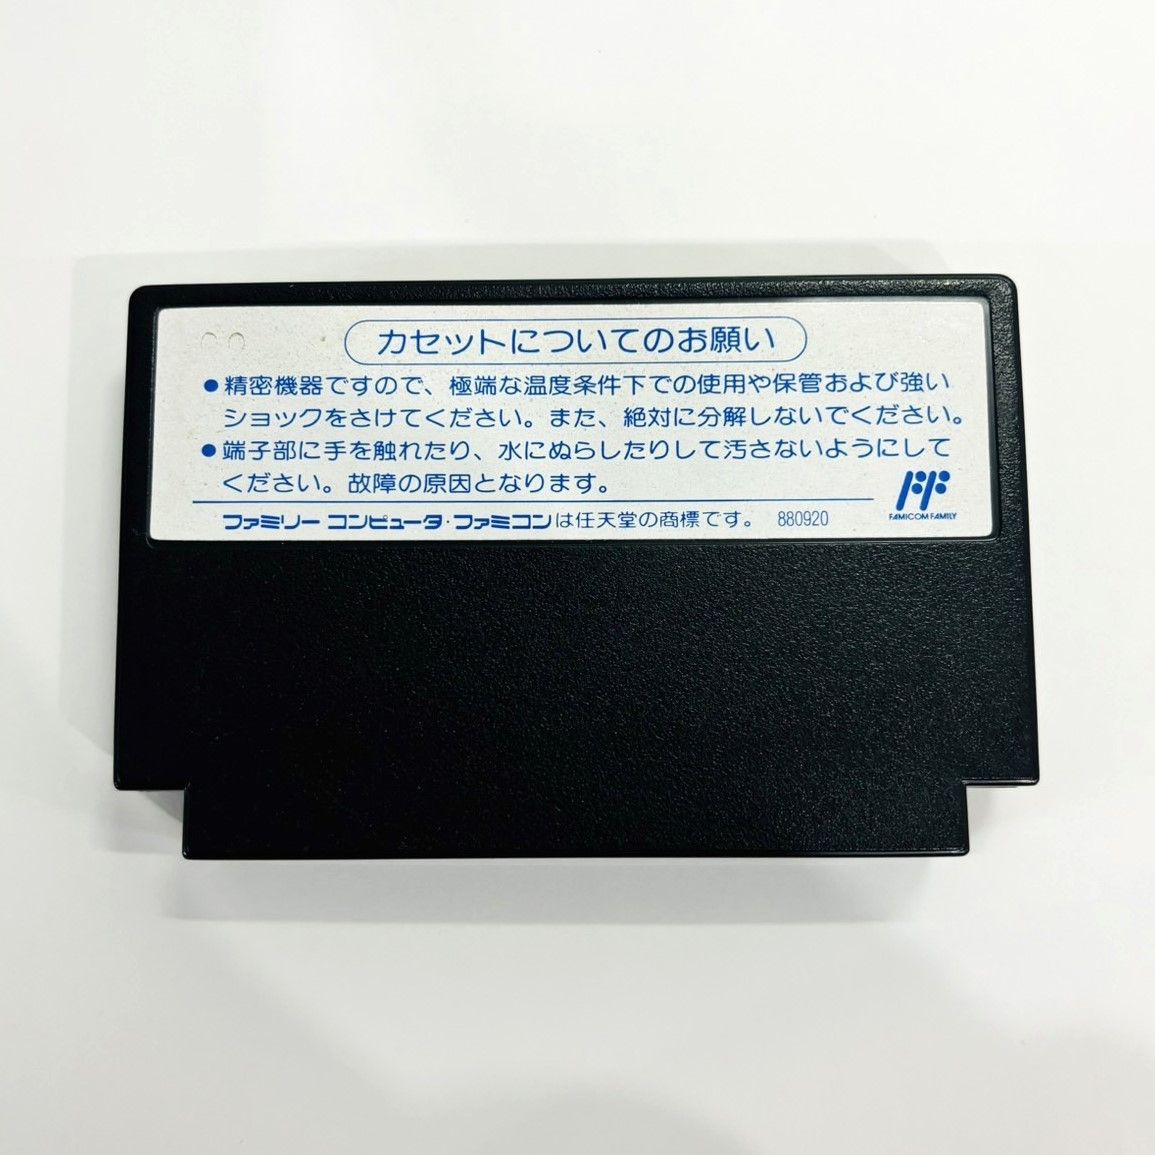 ◇【ソフトのみ】 FC パズロット PUZSLOT カセット ソフト SAC-1P 